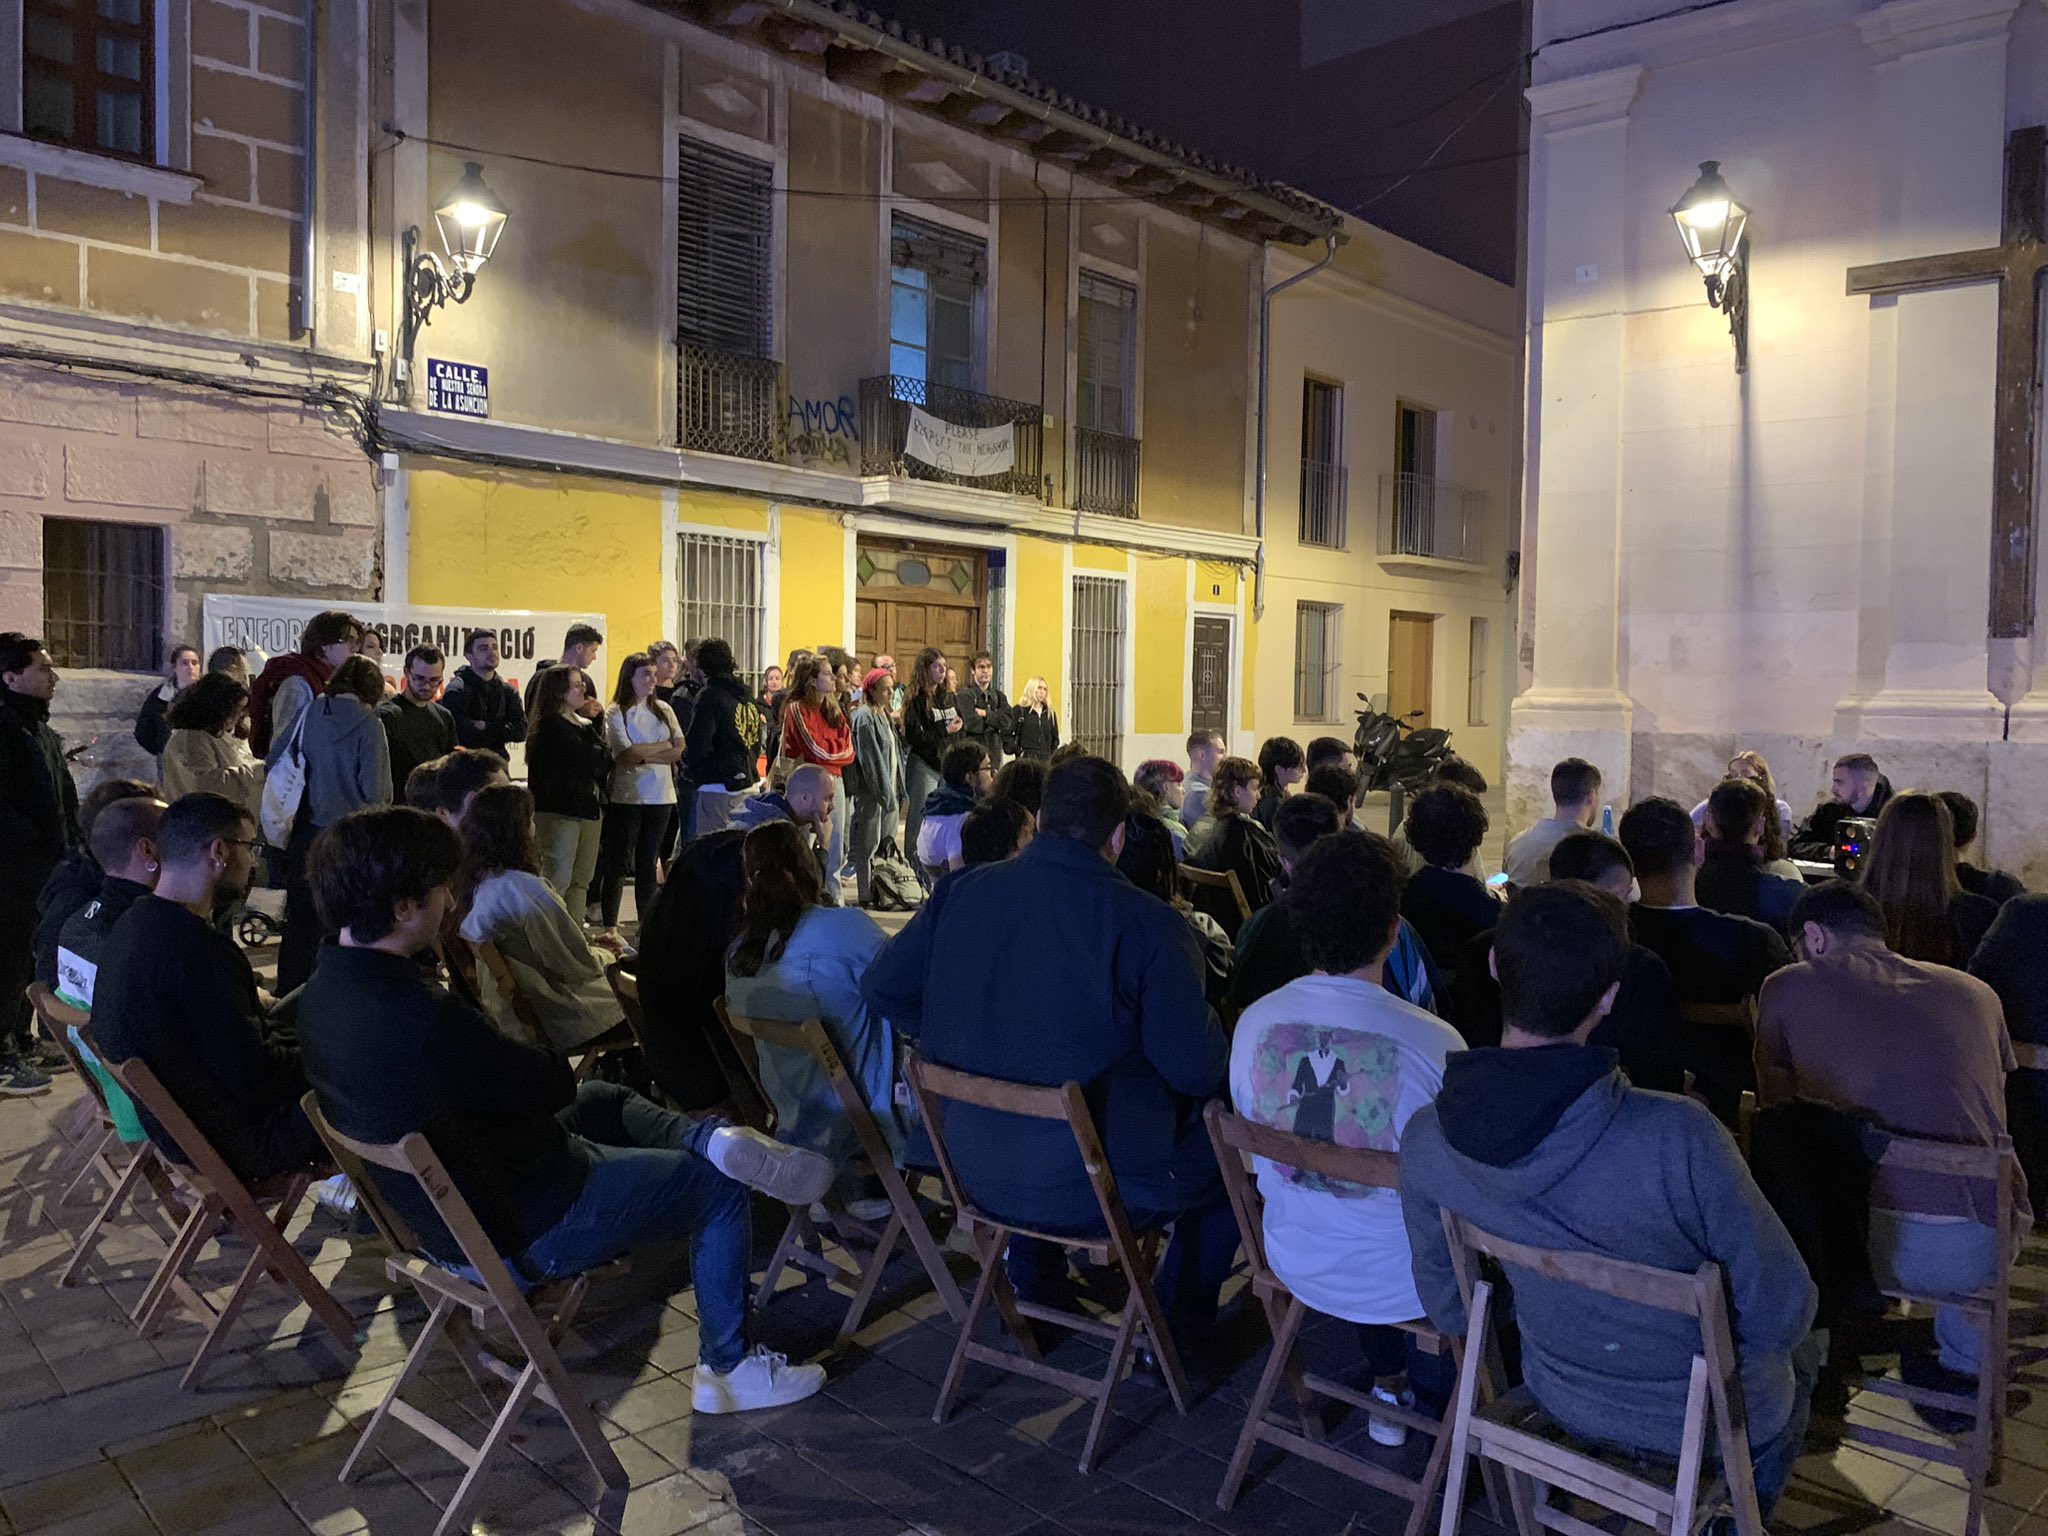 Es presenta l’Organització Juvenil Socialista del País Valencià a la ciutat de València